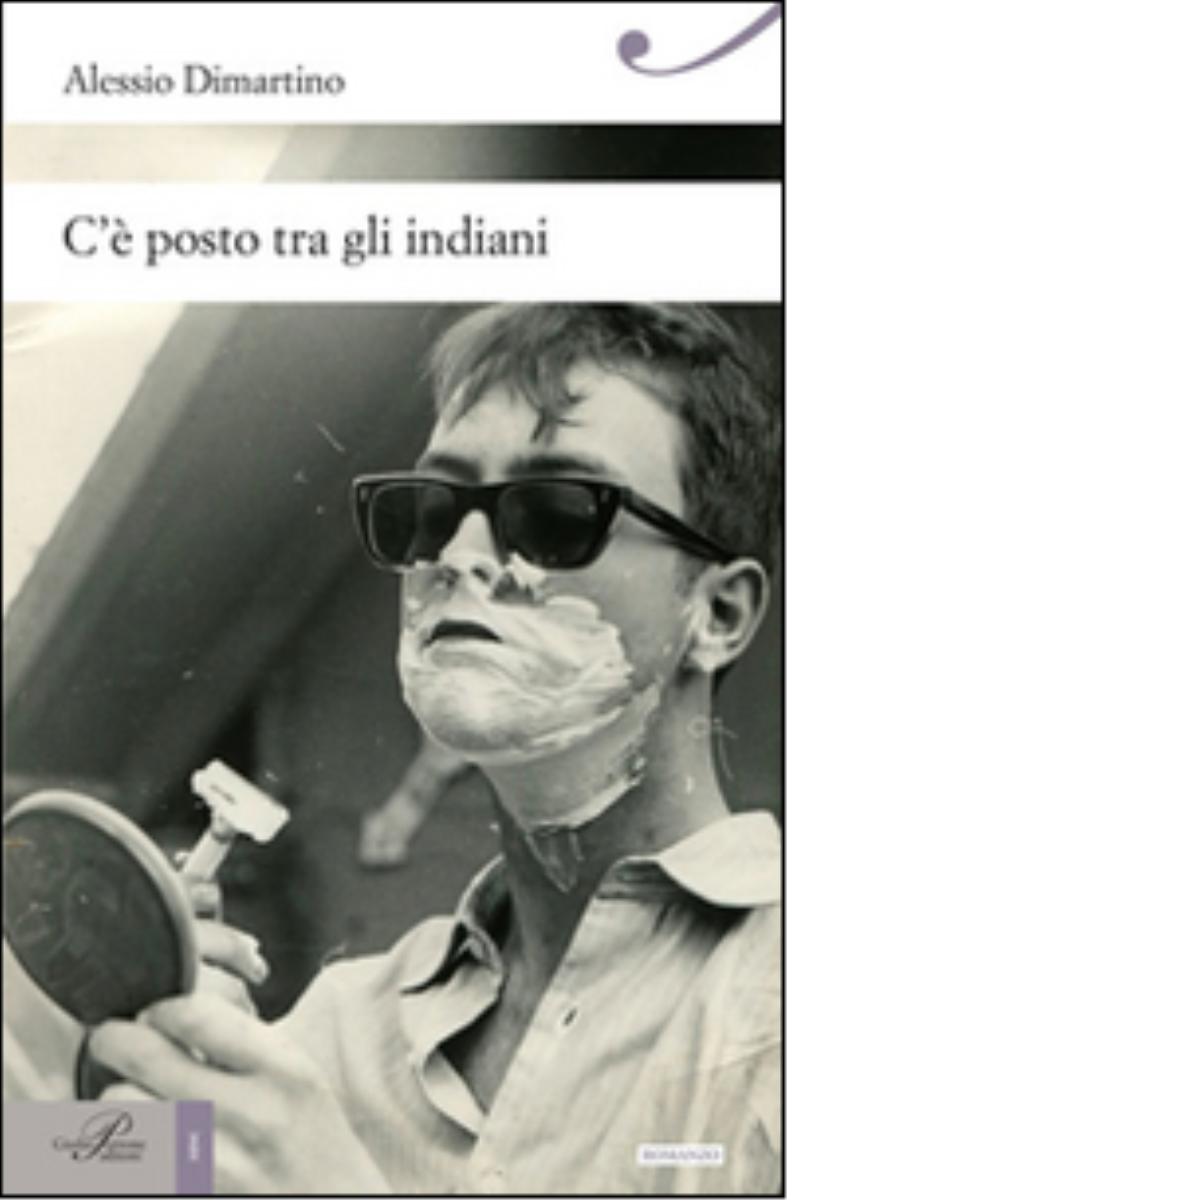 C'? posto tra gli indiani - Alessio Dimartino - Perrone editore, 2014